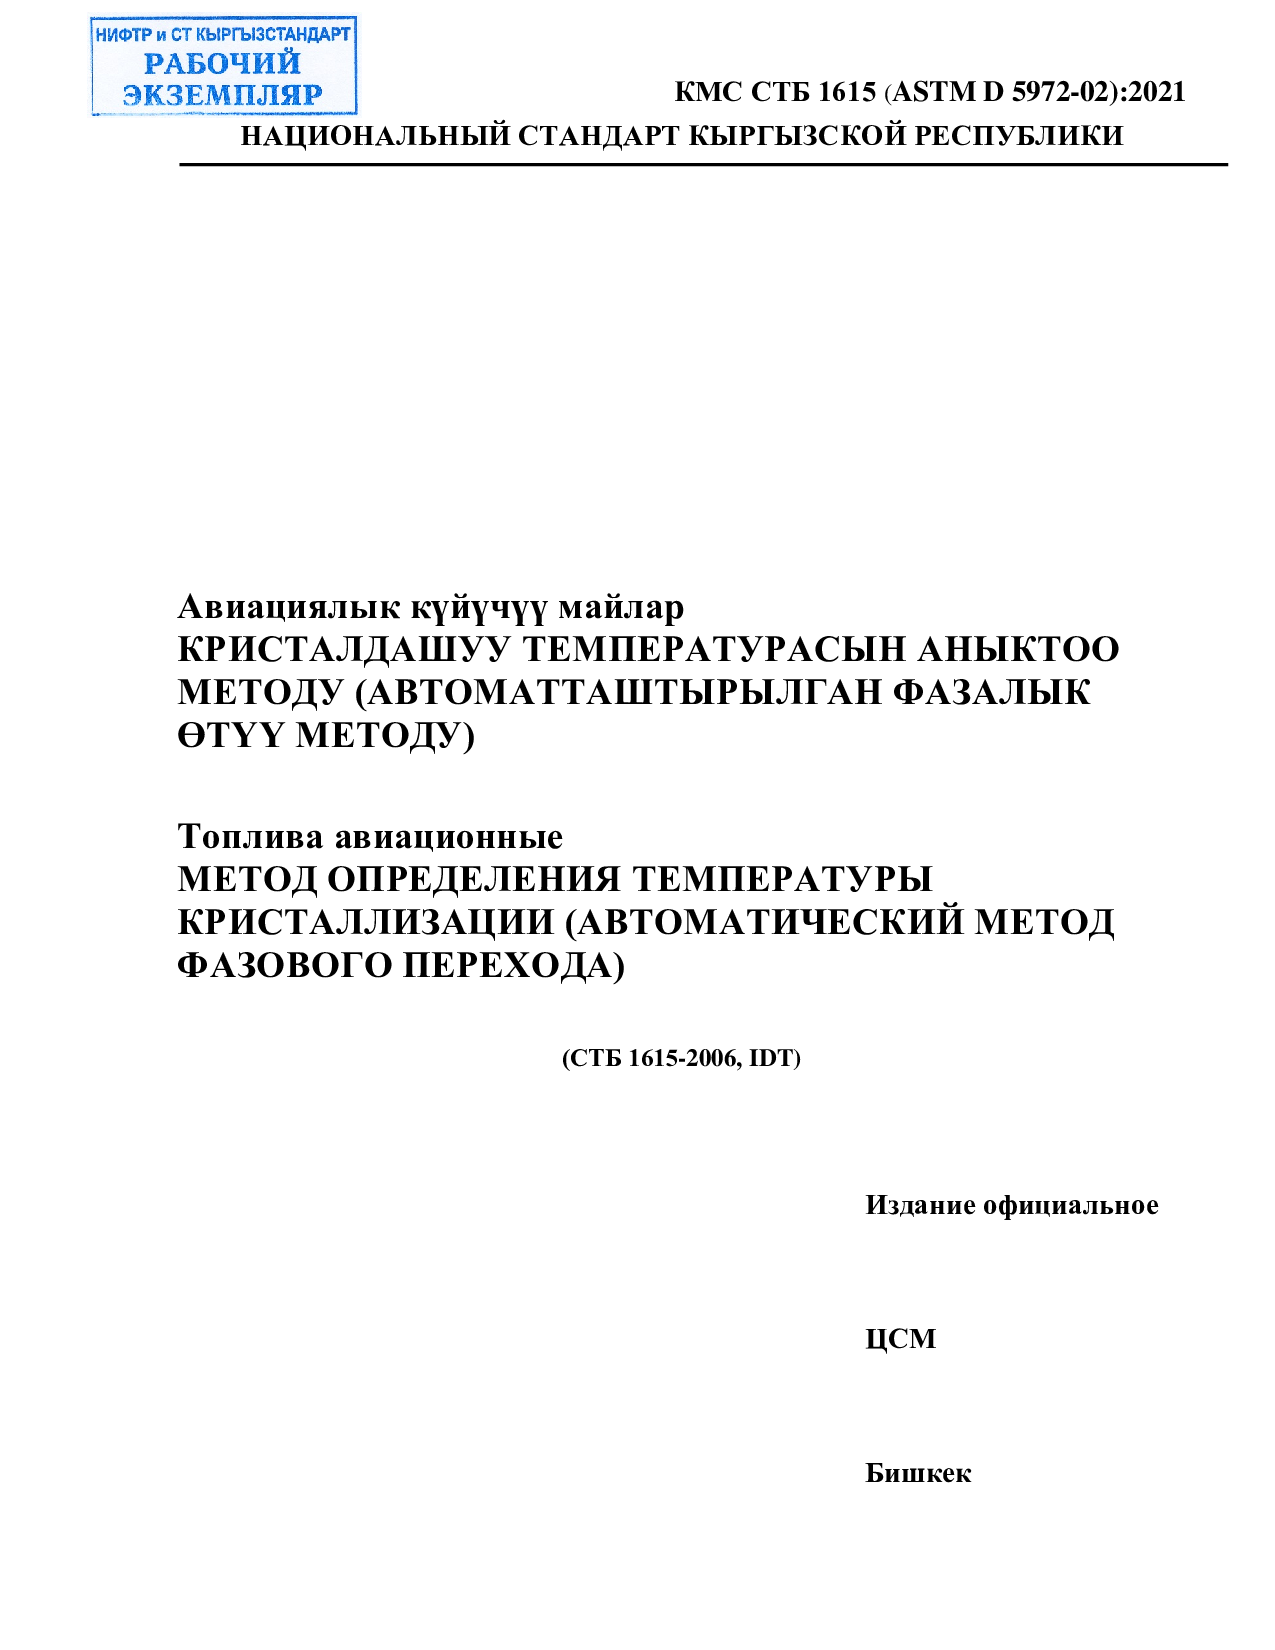 Топлива авиационные  МЕТОД ОПРЕДЕЛЕНИЯ ТЕМПЕРАТУРЫ  КРИСТАЛЛИЗАЦИИ (АВТОМАТИЧЕСКИЙ МЕТОД  ФАЗОВОГО ПЕРЕХОДА)      (СТБ 1615-2006, IDT)